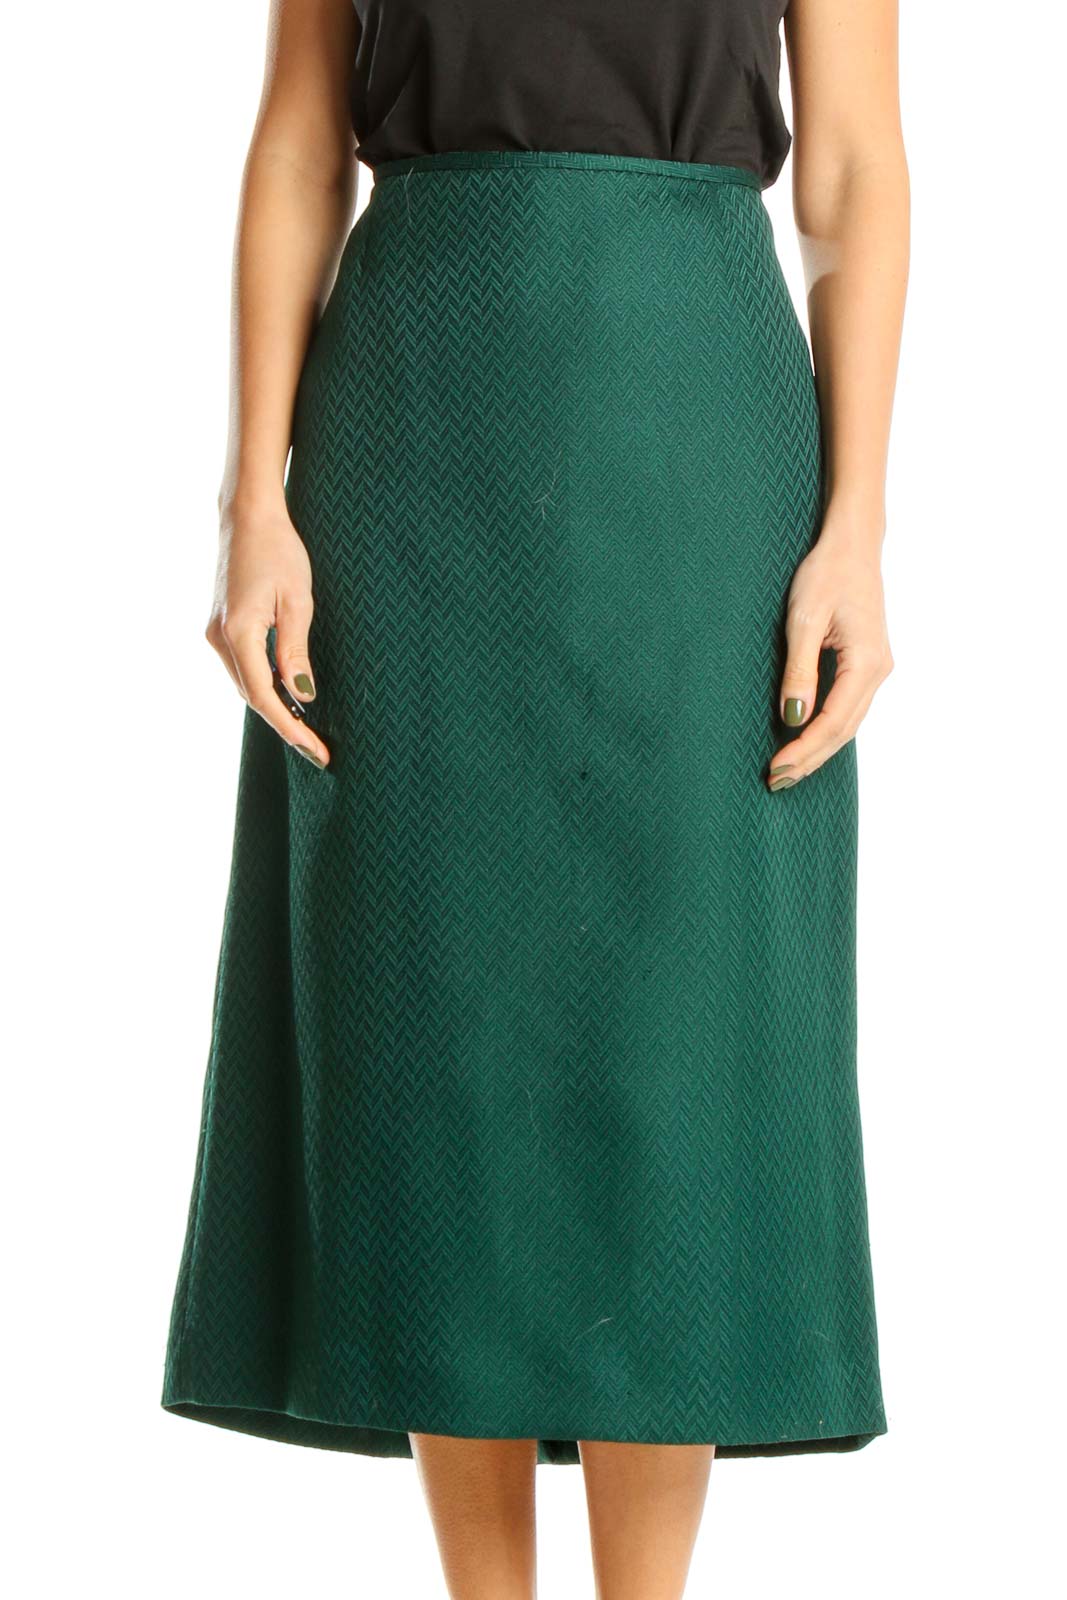 Green Textured Brunch A-Line Skirt Front